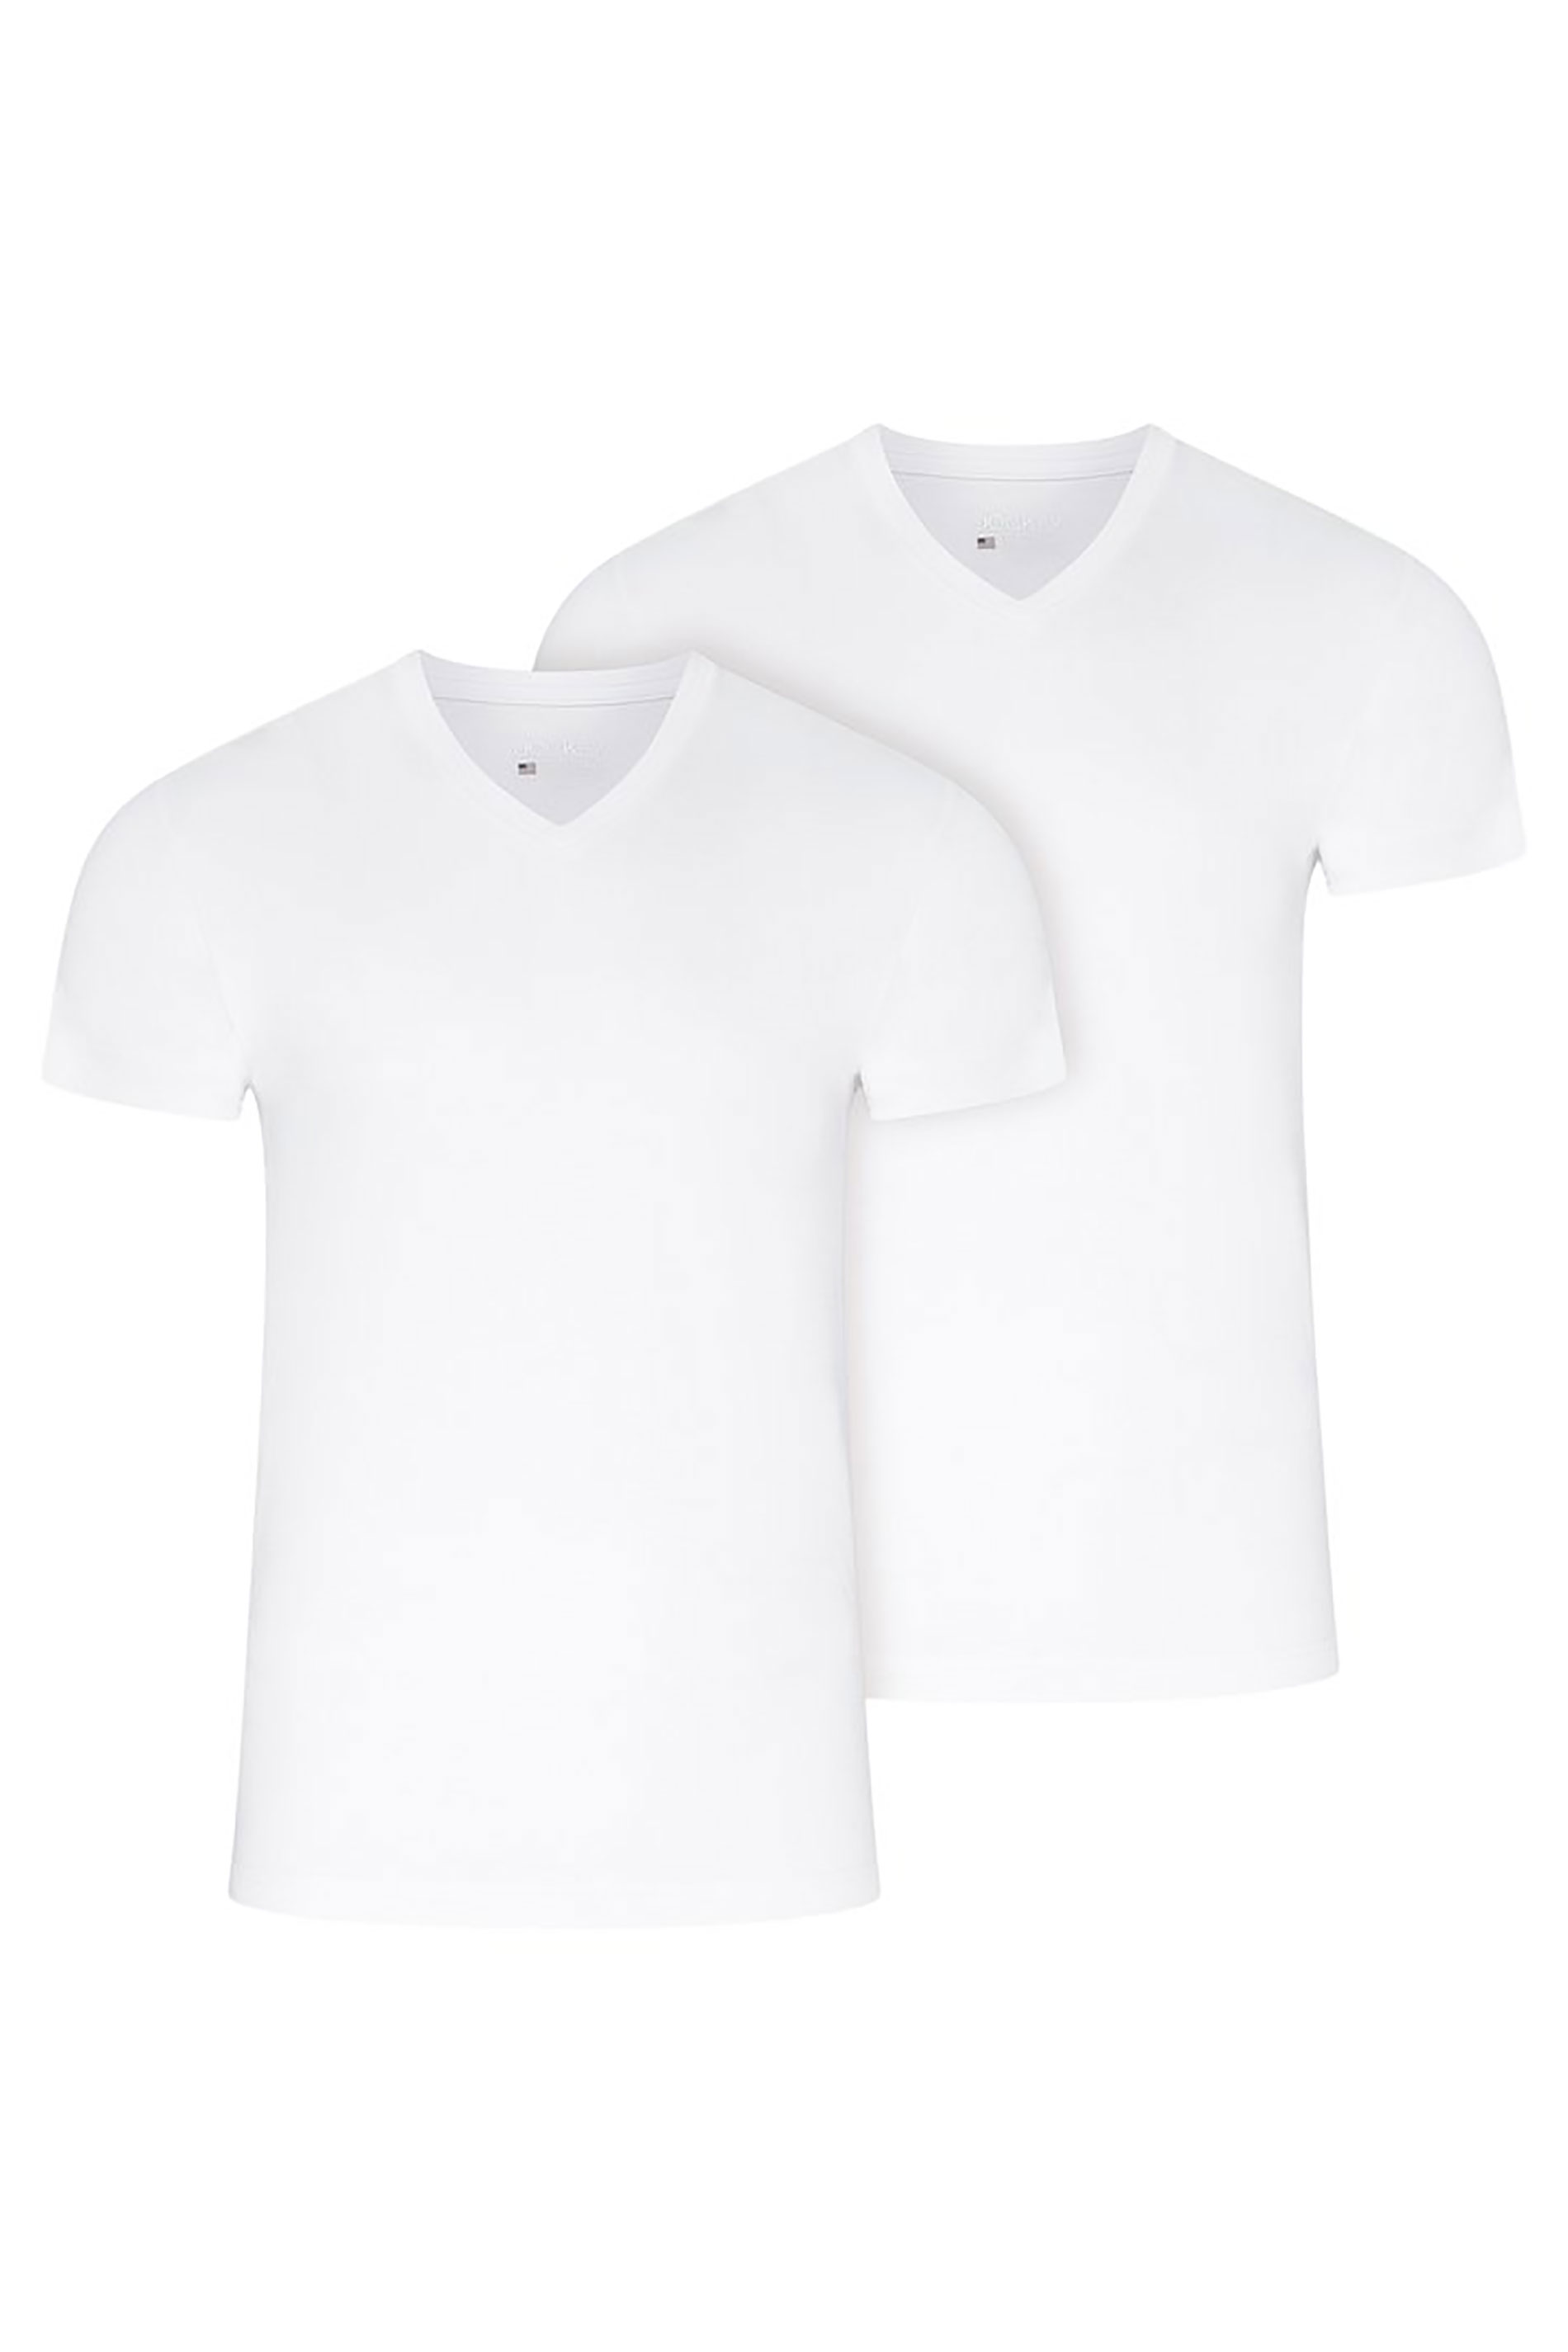 JOCKEY White 2 Pack V-Neck T-Shirts | BadRhino